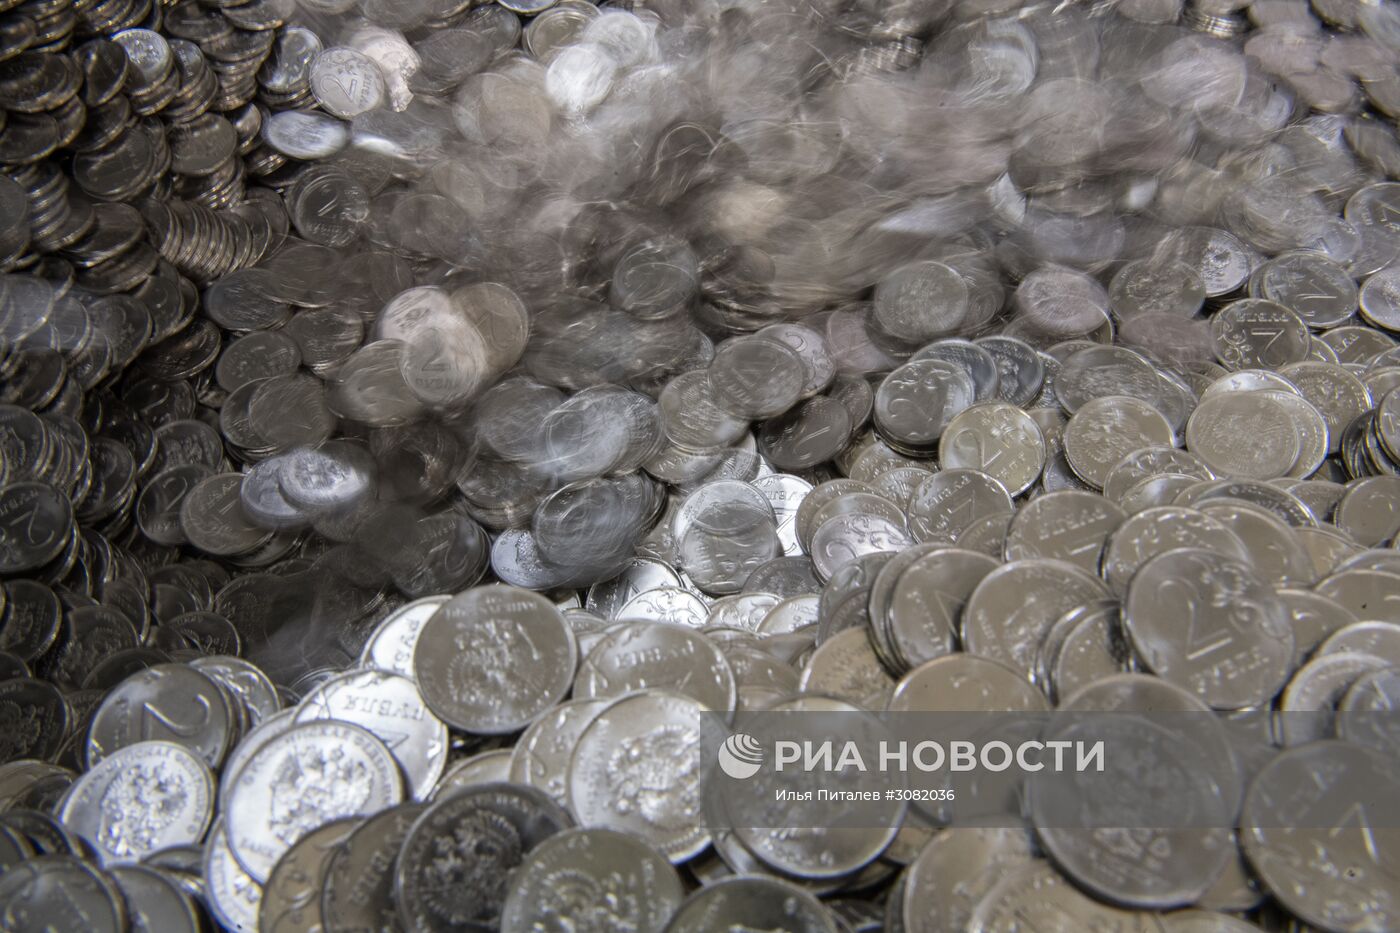 Московский монетный двор